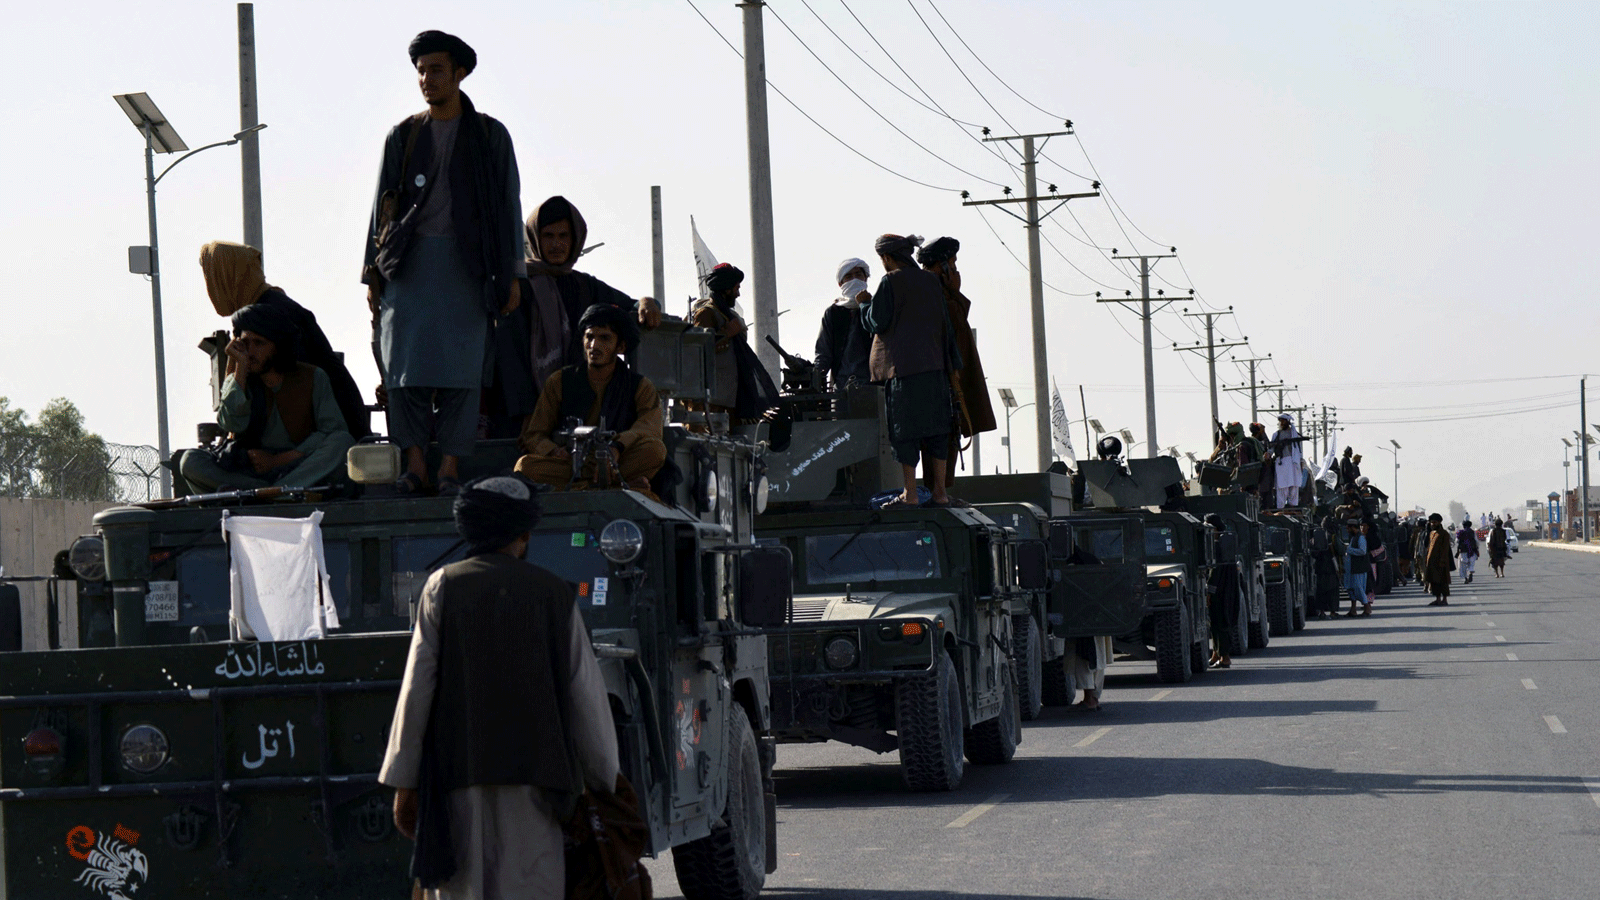 مقاتلو طالبان فوق مركبات همفي يستعدون للمسيرة الاحتفالية في قندهار بعدما سحبت الولايات المتحدة جميع قواتها من أفغانستان. 1 أيلول/ سبتمبر 2021